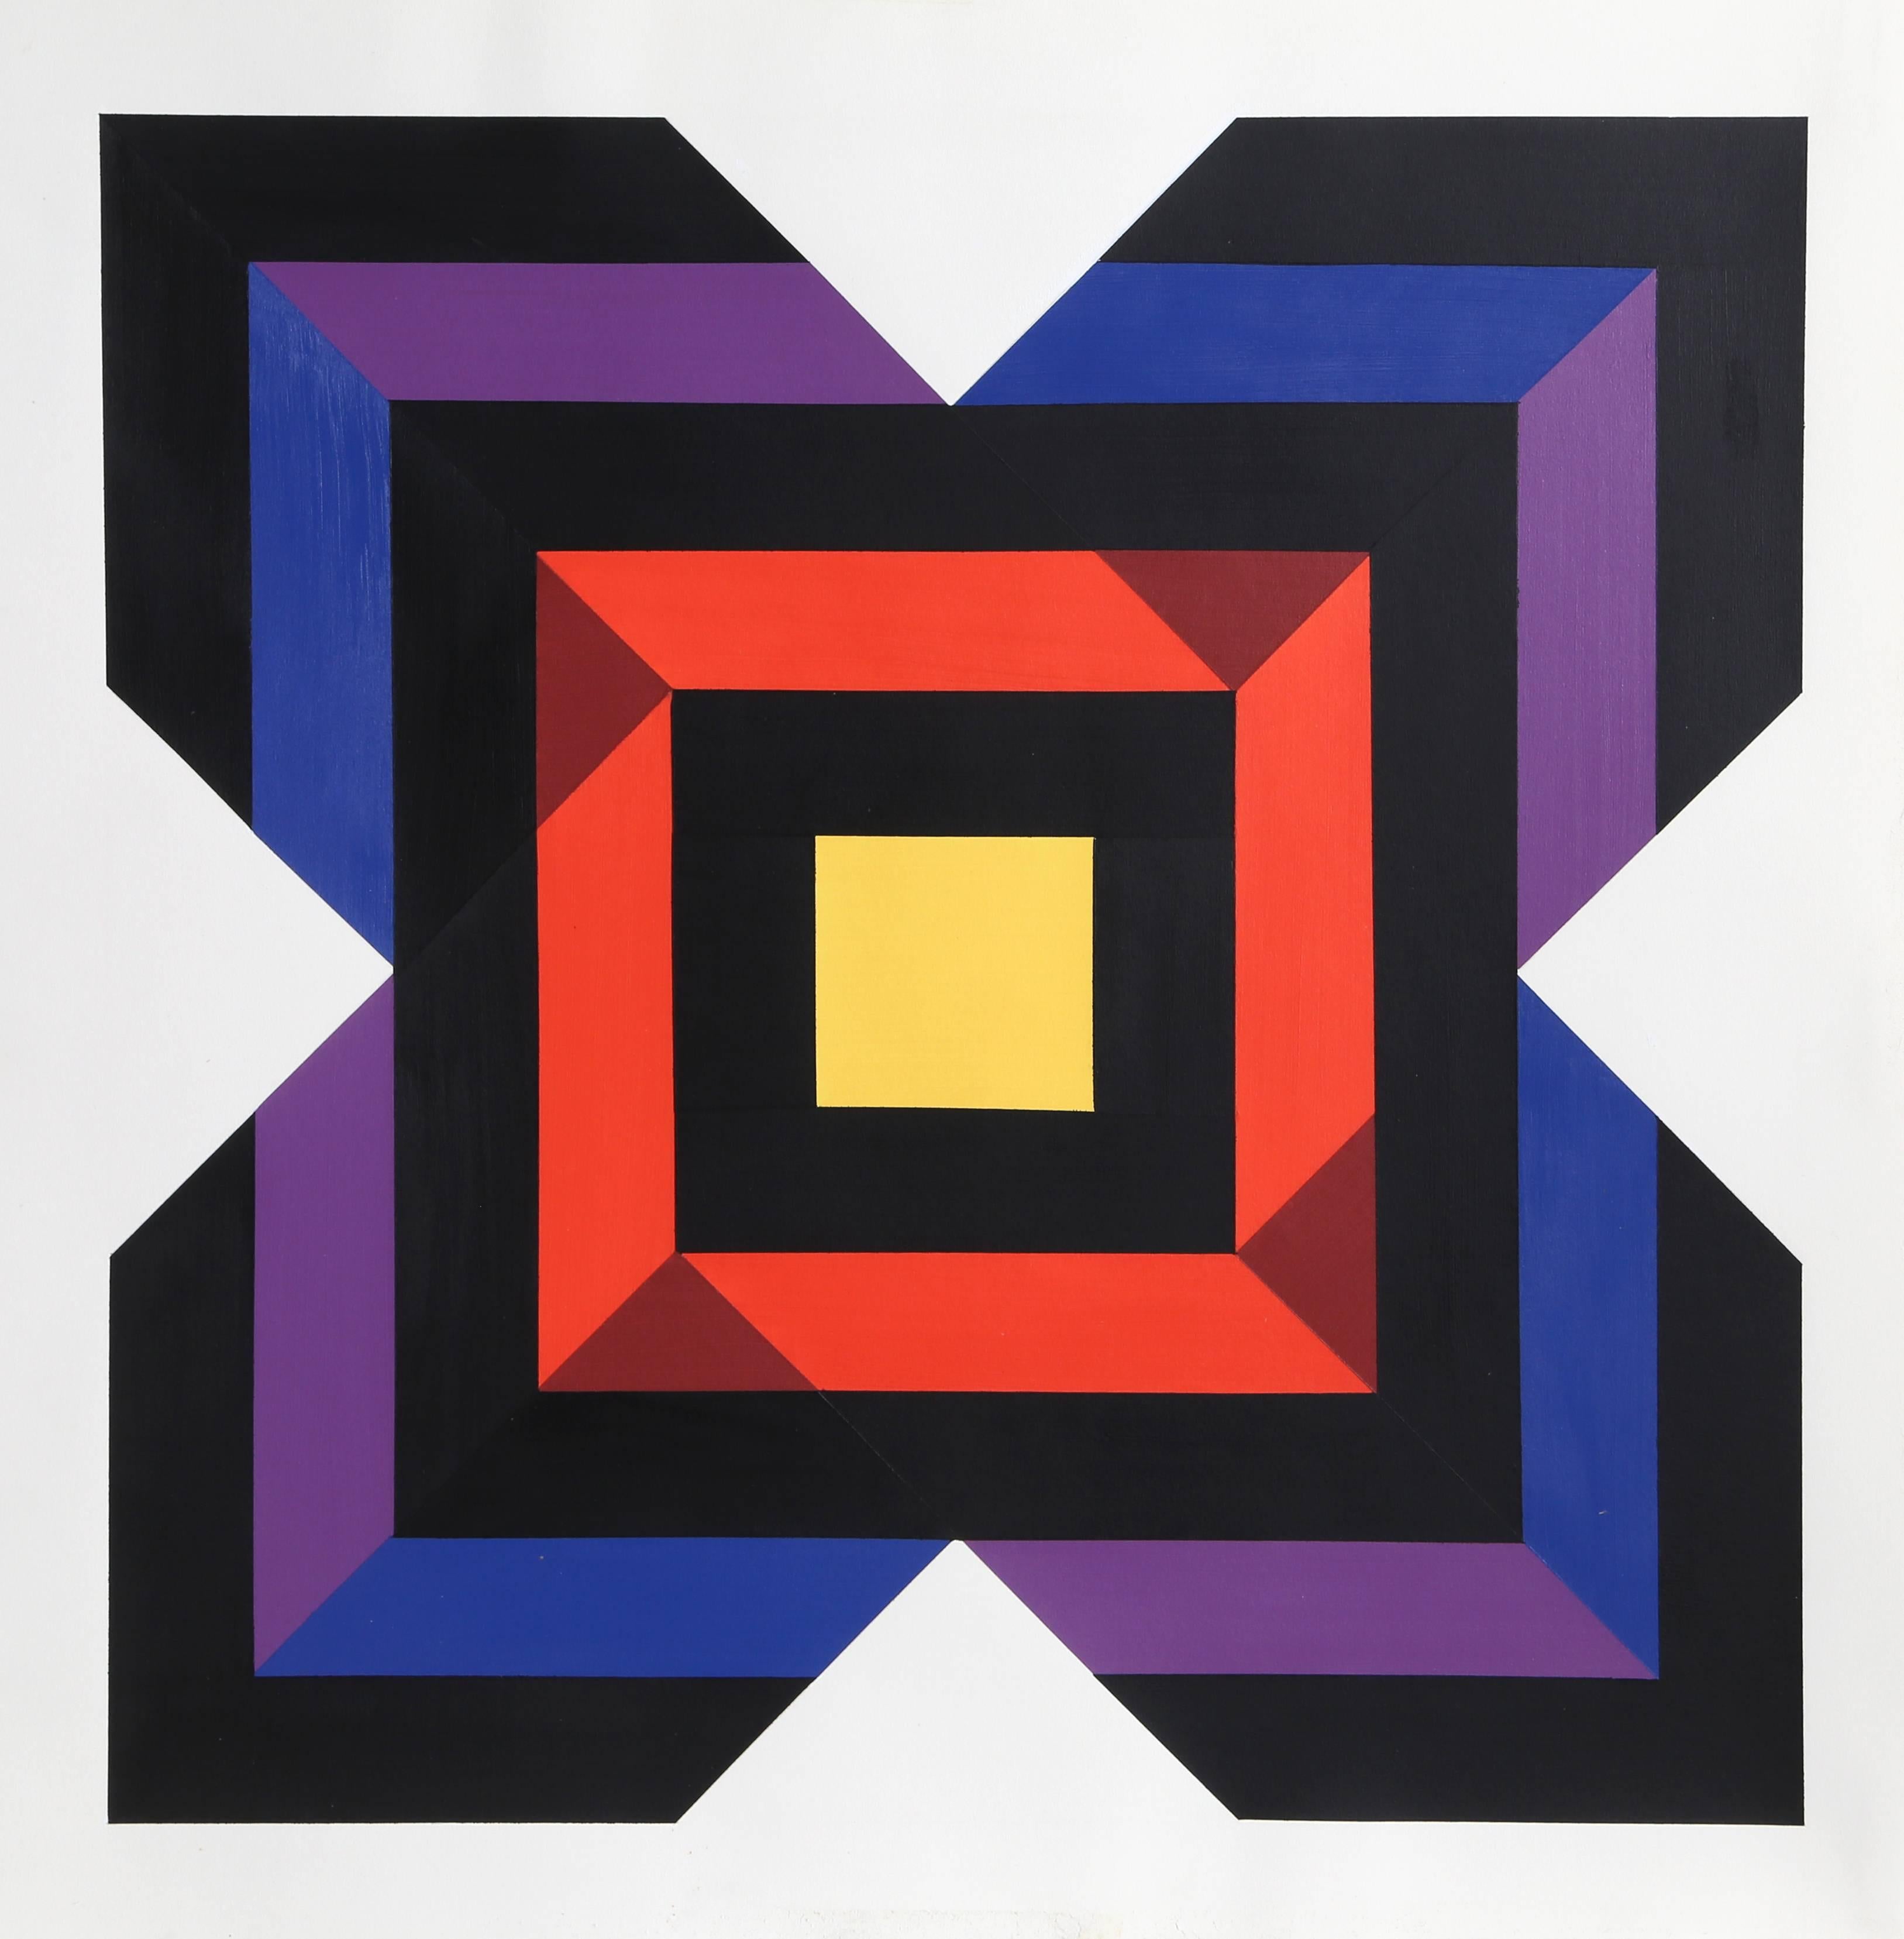 Künstler: Jules Engels, Ungar/Amerikaner (1909 - 2003)
Titel: Unbetitelt 3
Jahr: ca. 1970
Medium: Acryl auf Papier
Größe: 21 x 21 Zoll